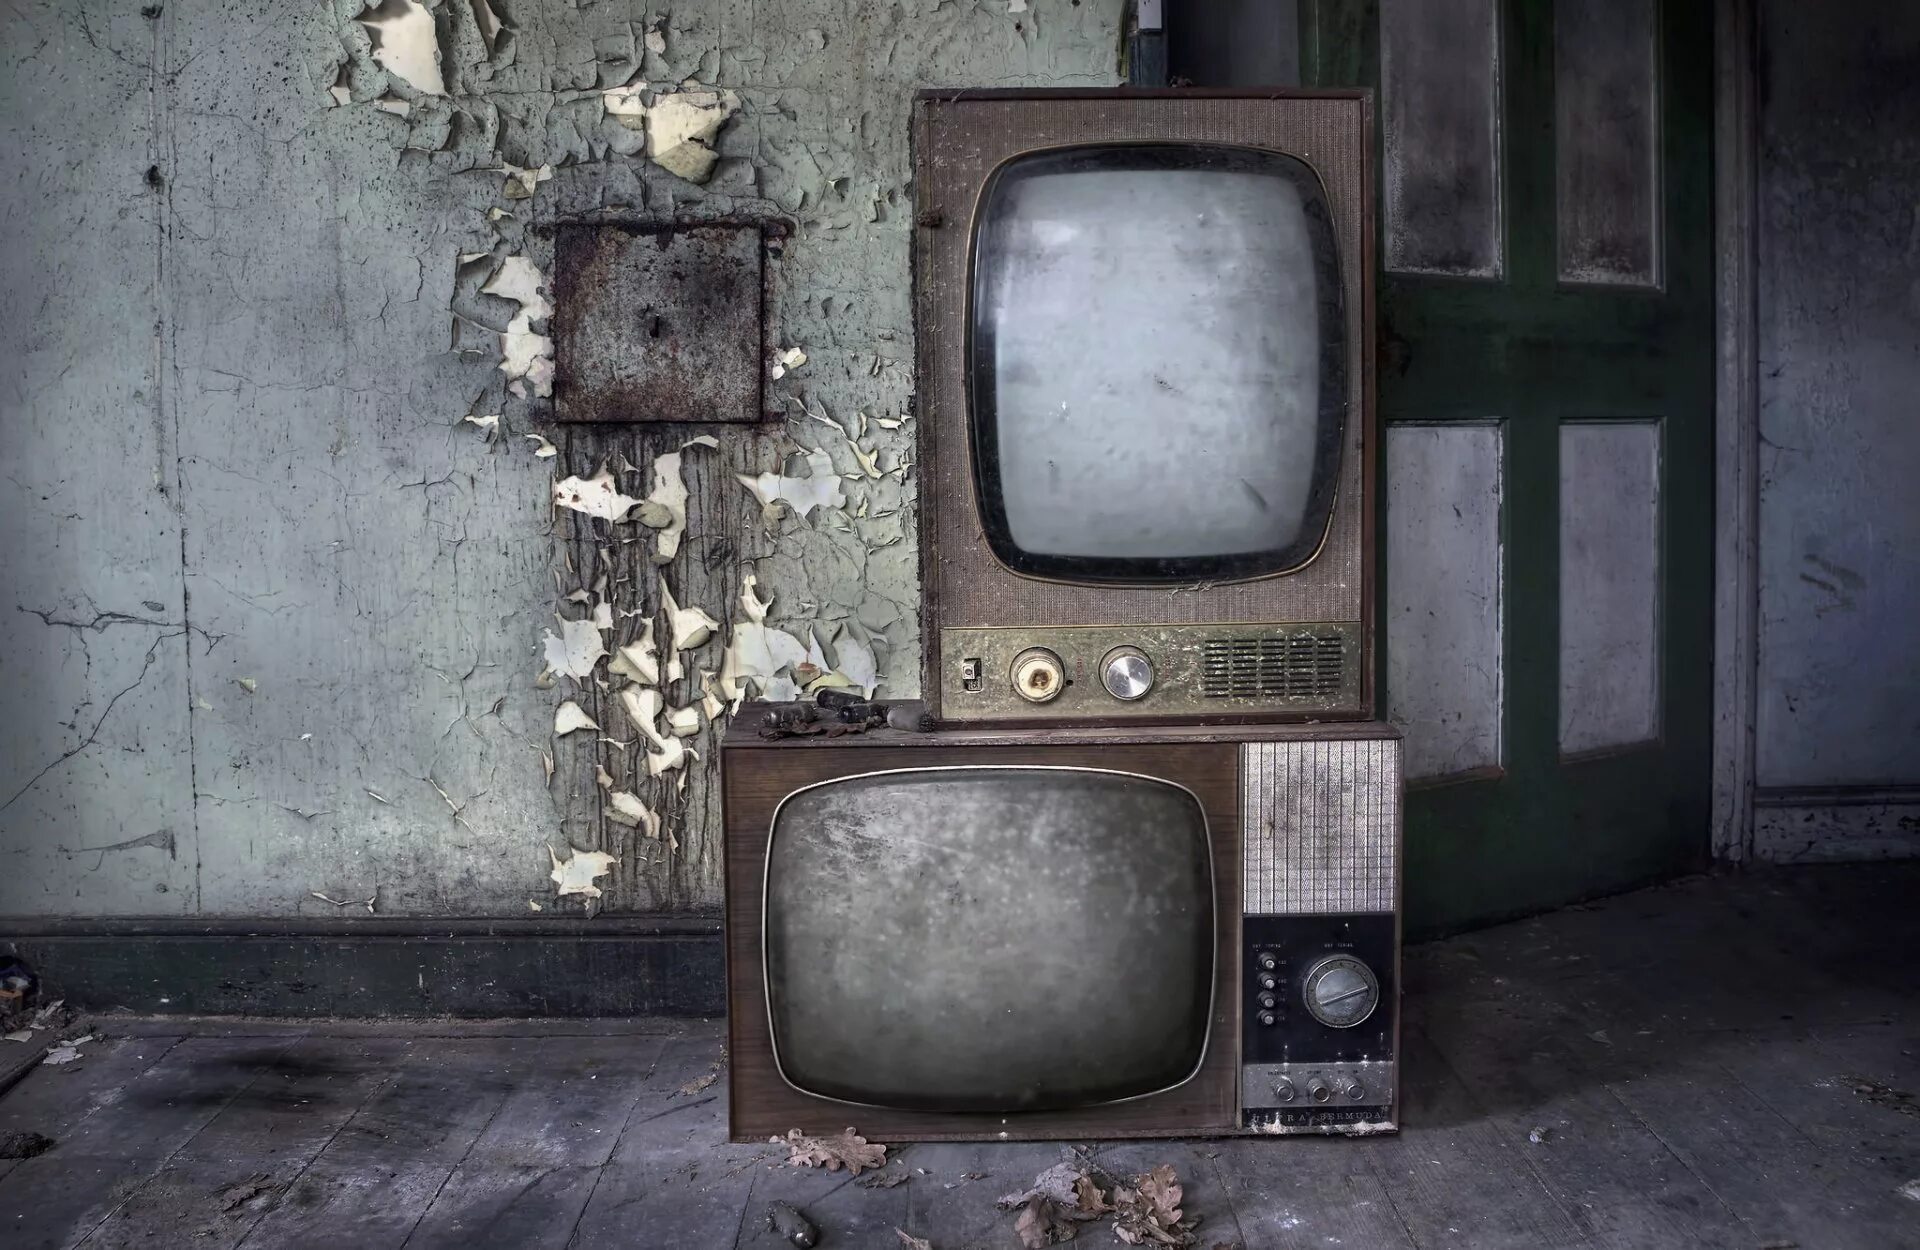 Старый телевизор. Старинный телевизор. Старый телевизор в интерьере. Старый поломанный телевизор. Old tv shows